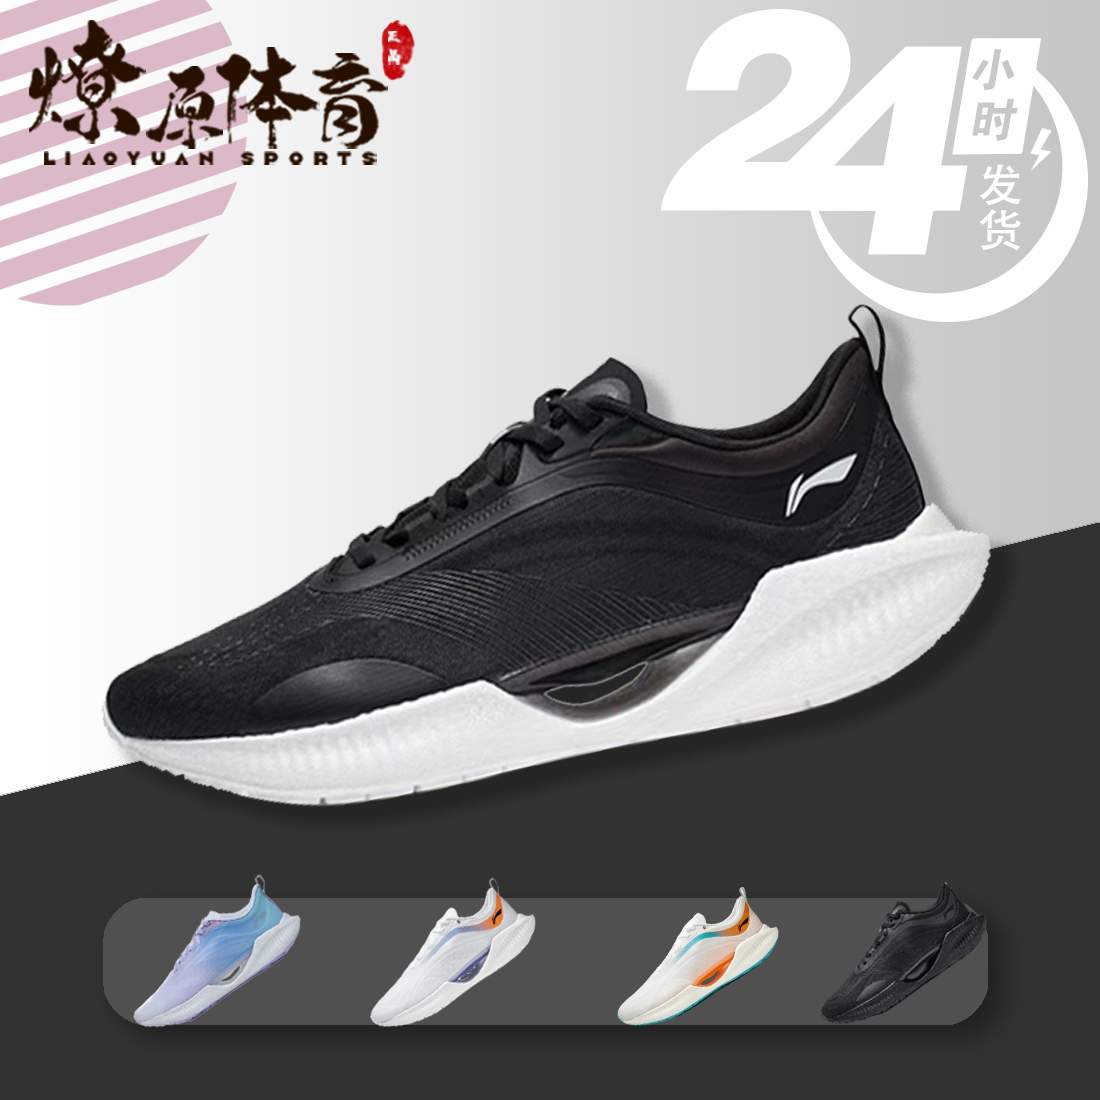 李宁超轻19黑白 䨻科技运动鞋男子减震透气专业竞速跑鞋ARBS001-8